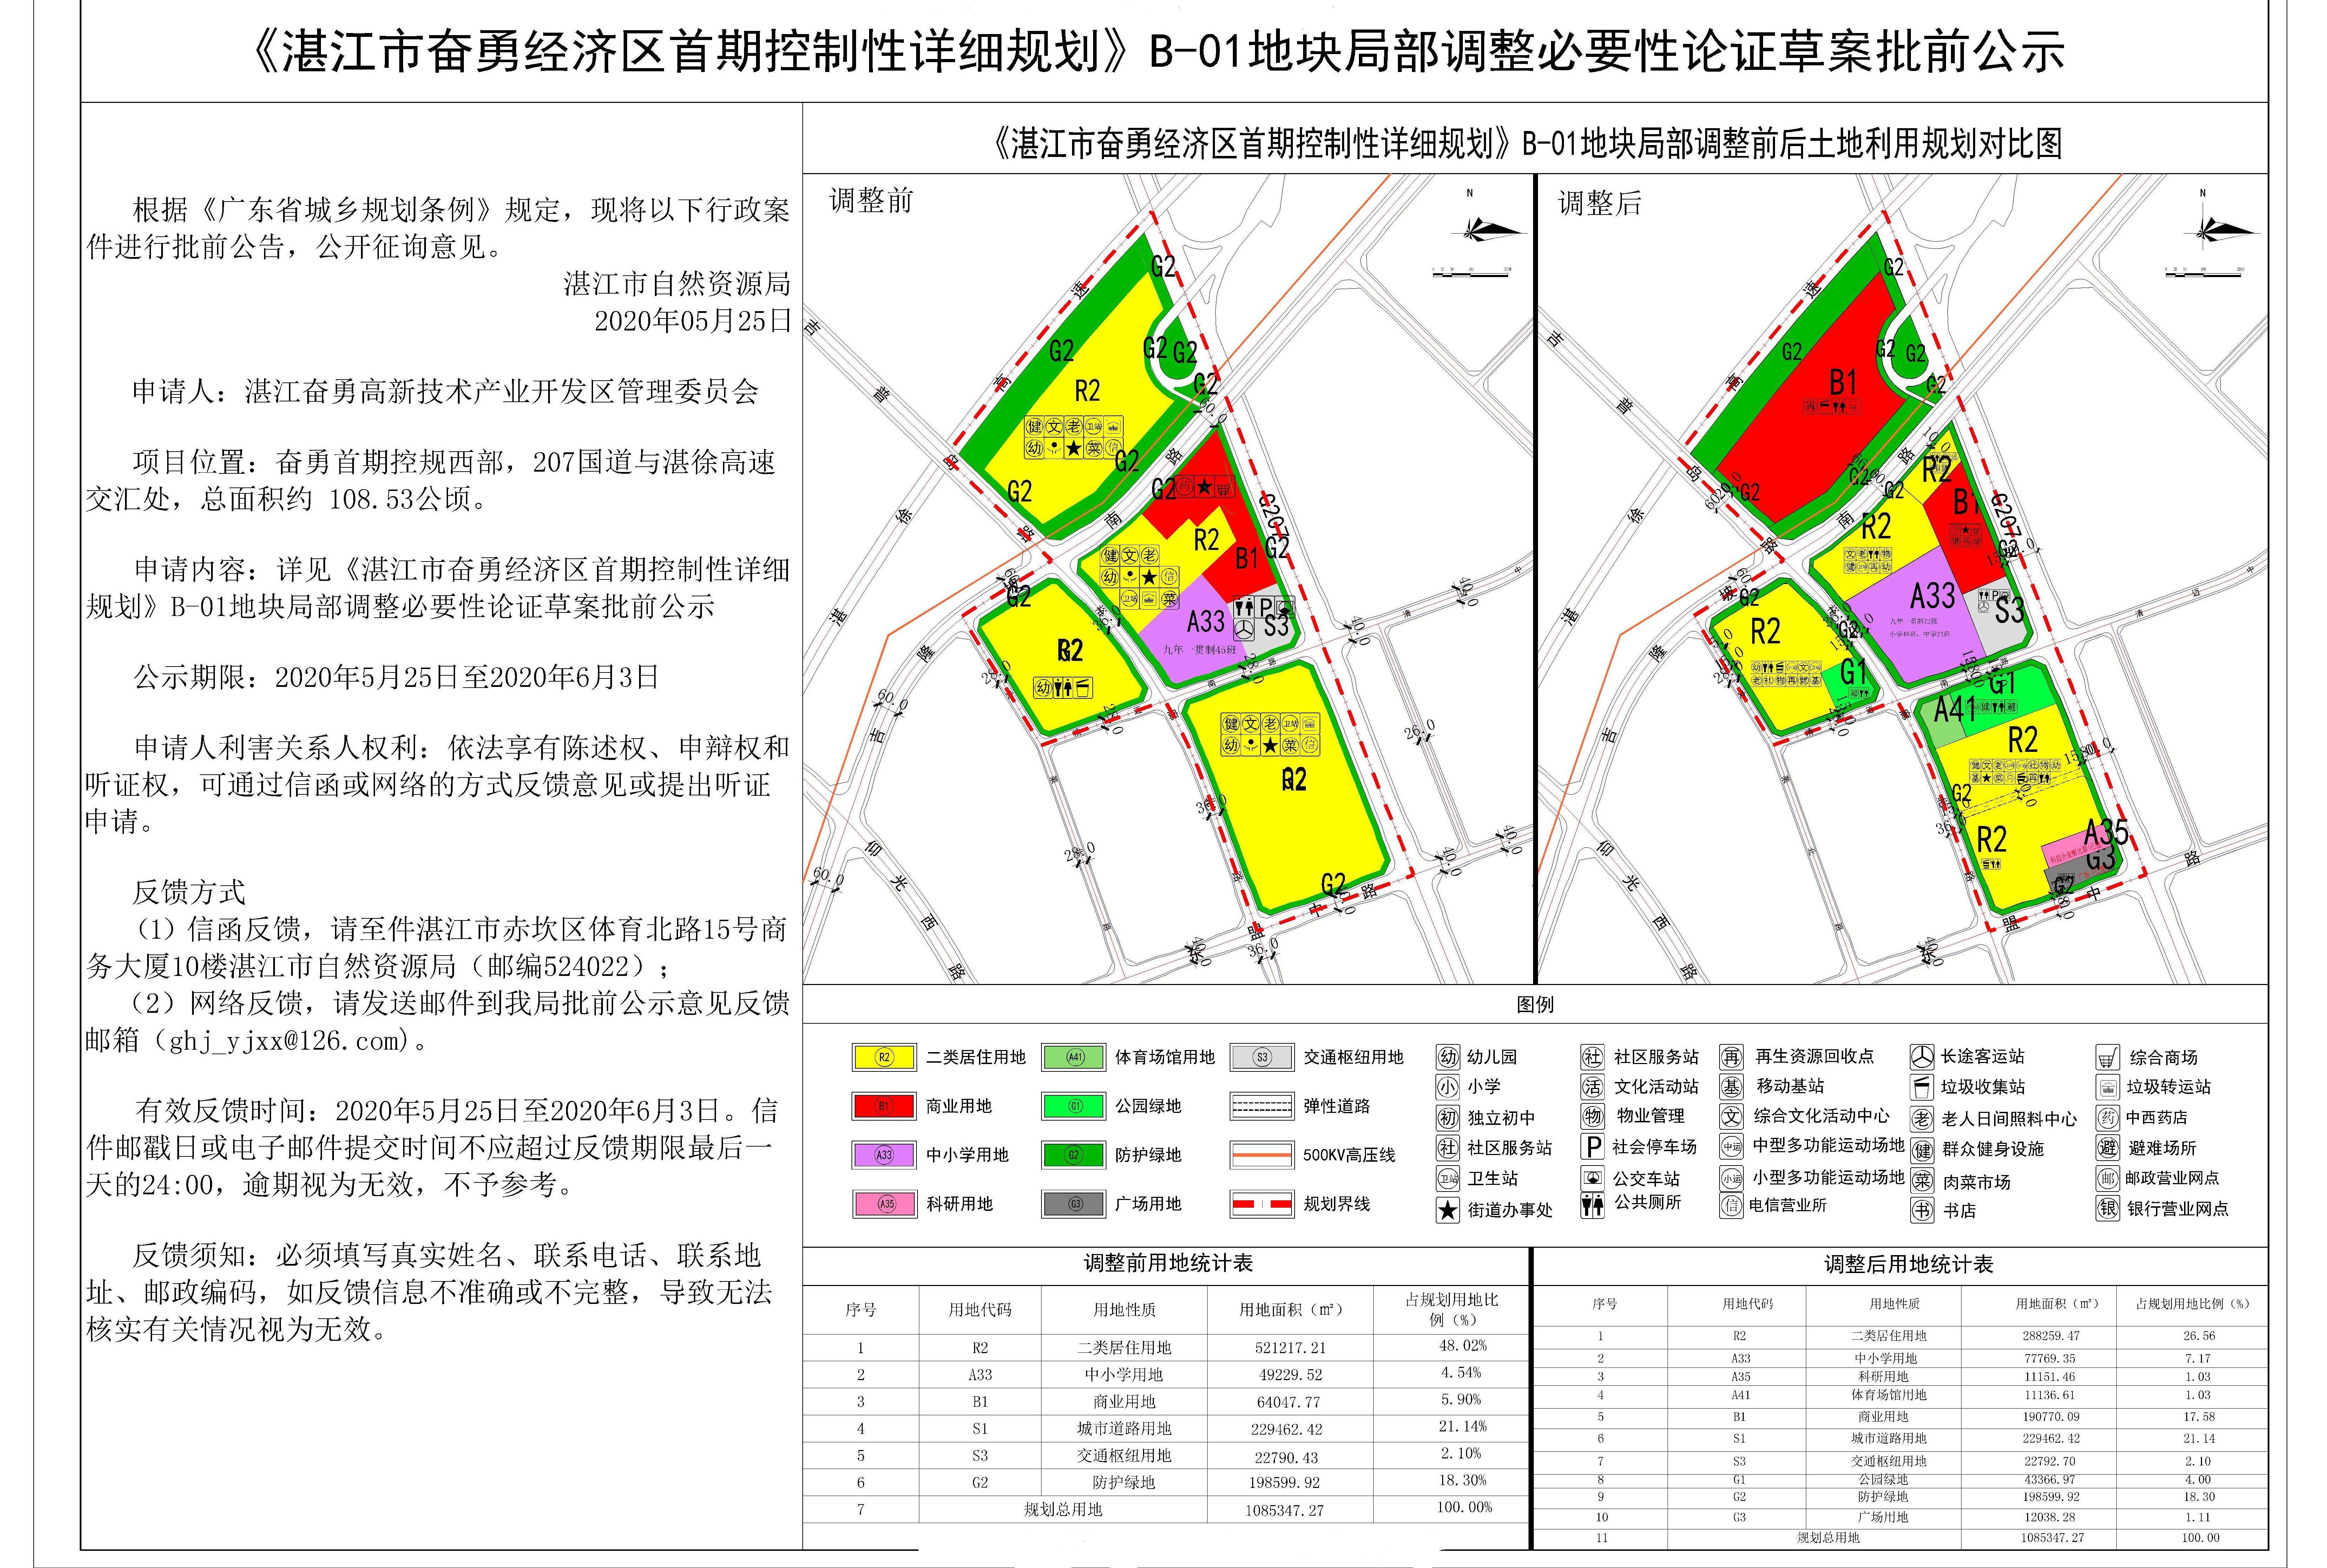 湛江市自然资源局发布了《湛江市奋勇经济区首期控制性详细规划》b-01